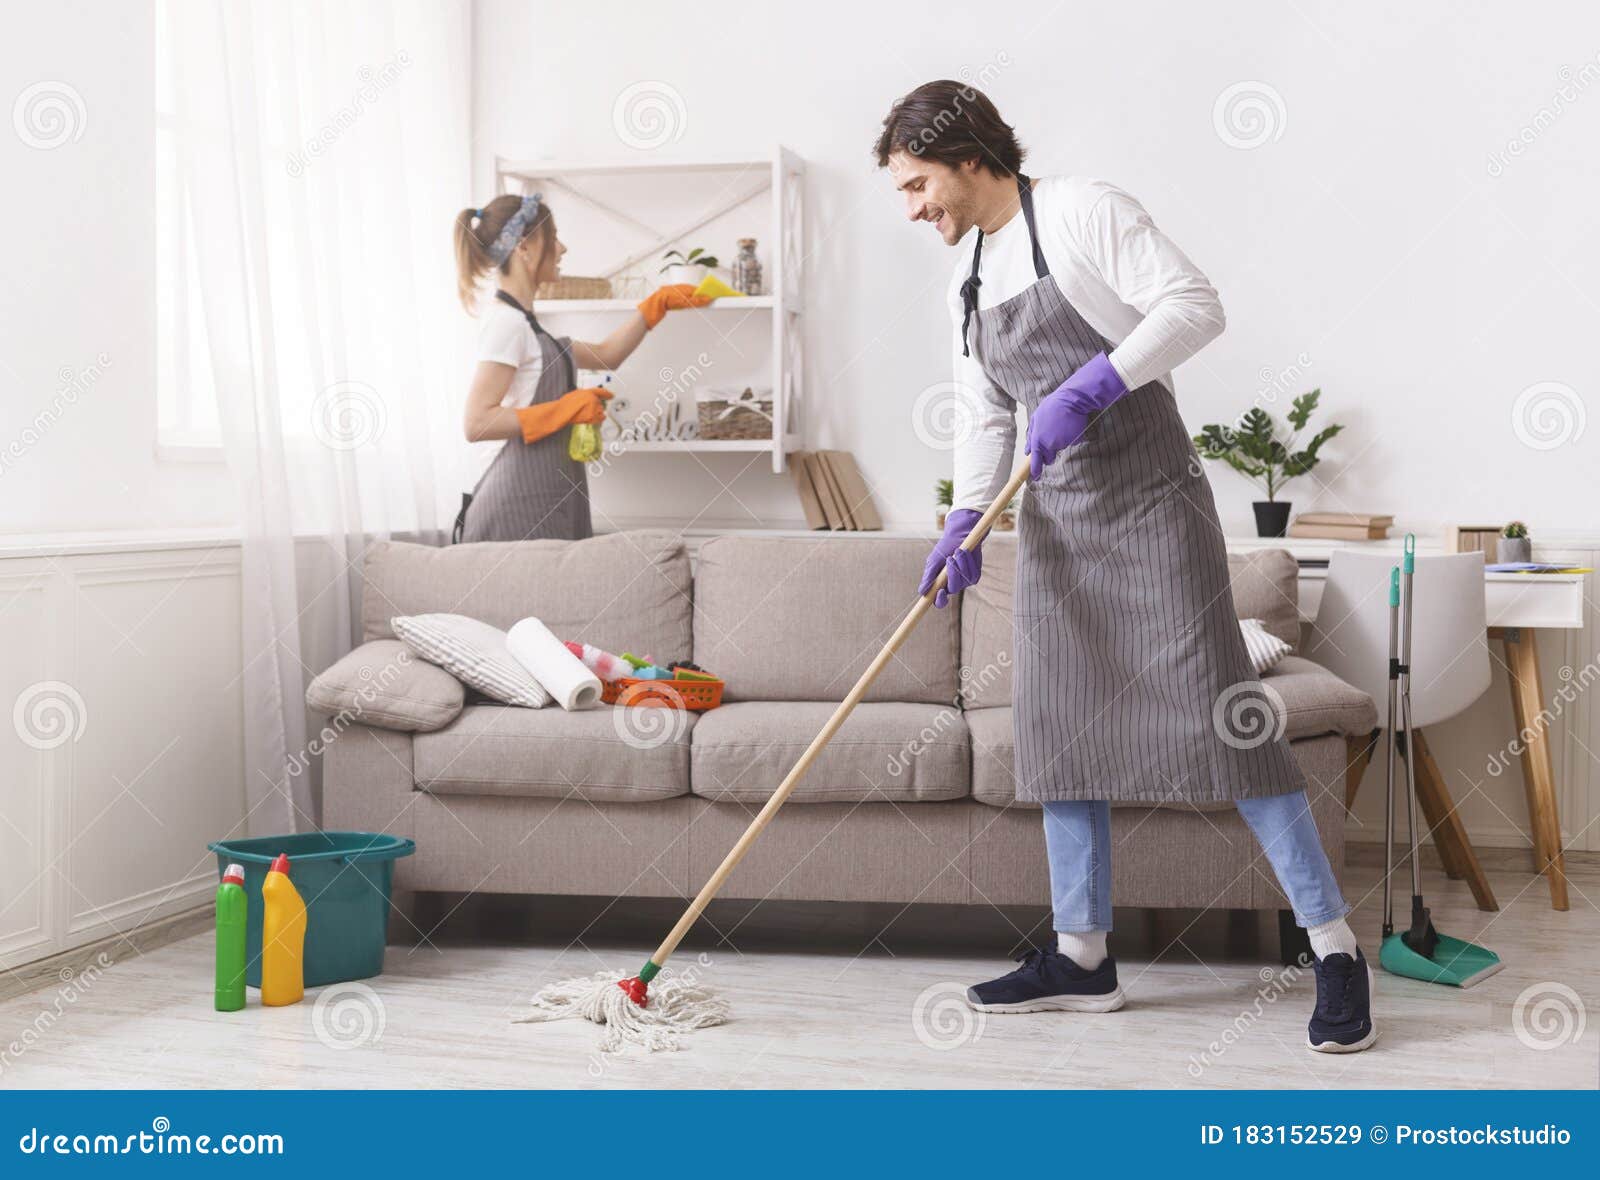 Serviços De Limpeza Residencial. Casal De Donos De Casa